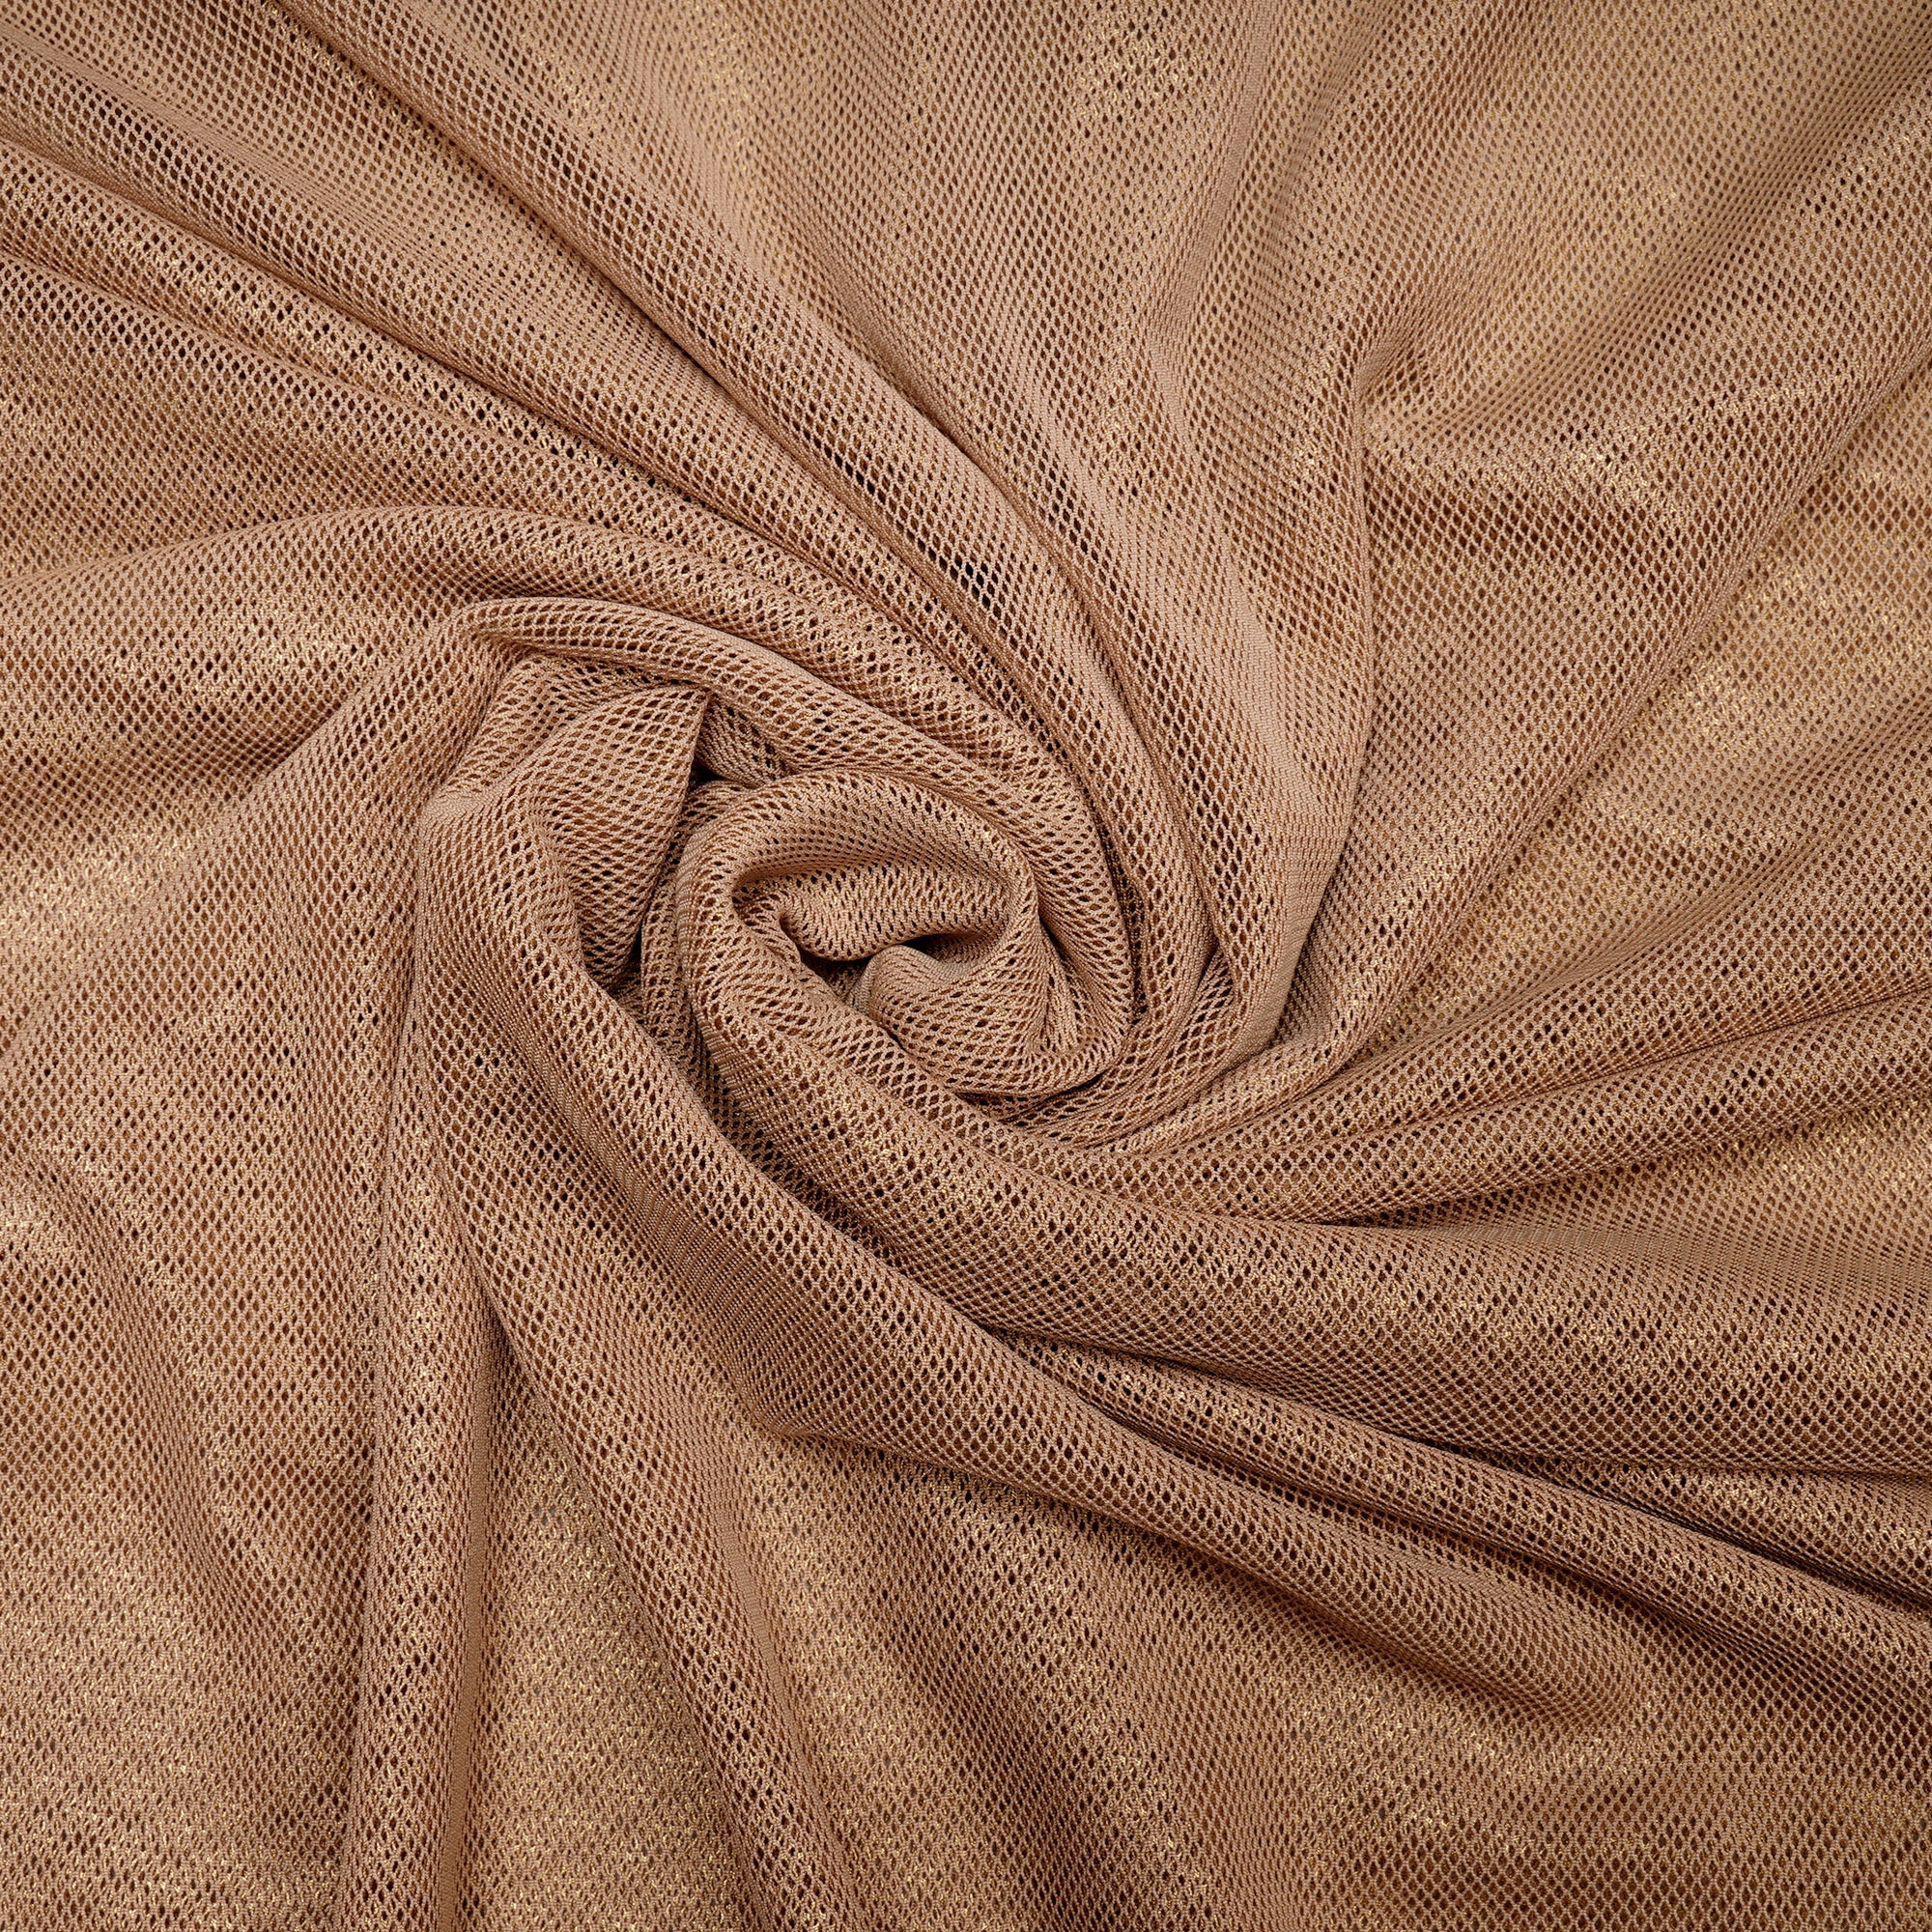 Cotton Fancy Net Fabric-4595523